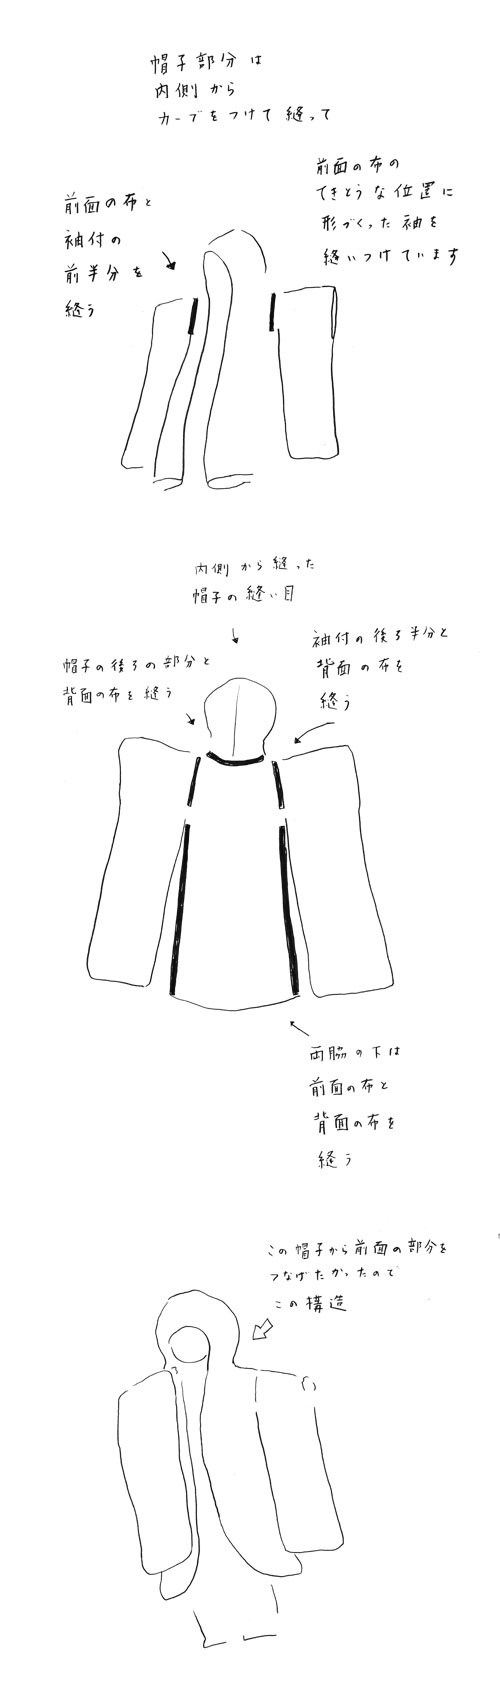 tsurumaru-san-fooded-kimono-clothes-diagram-002